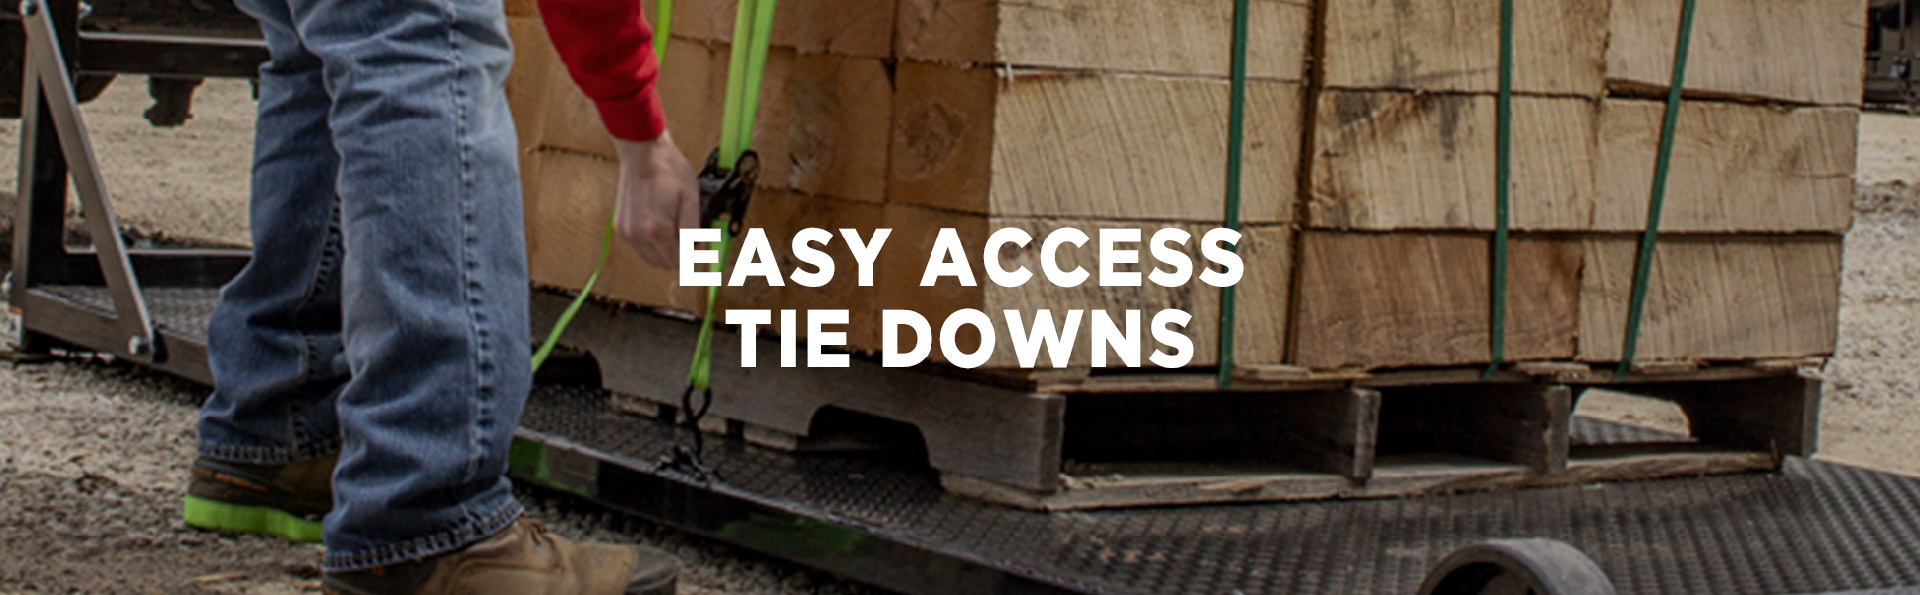 easy access tie down